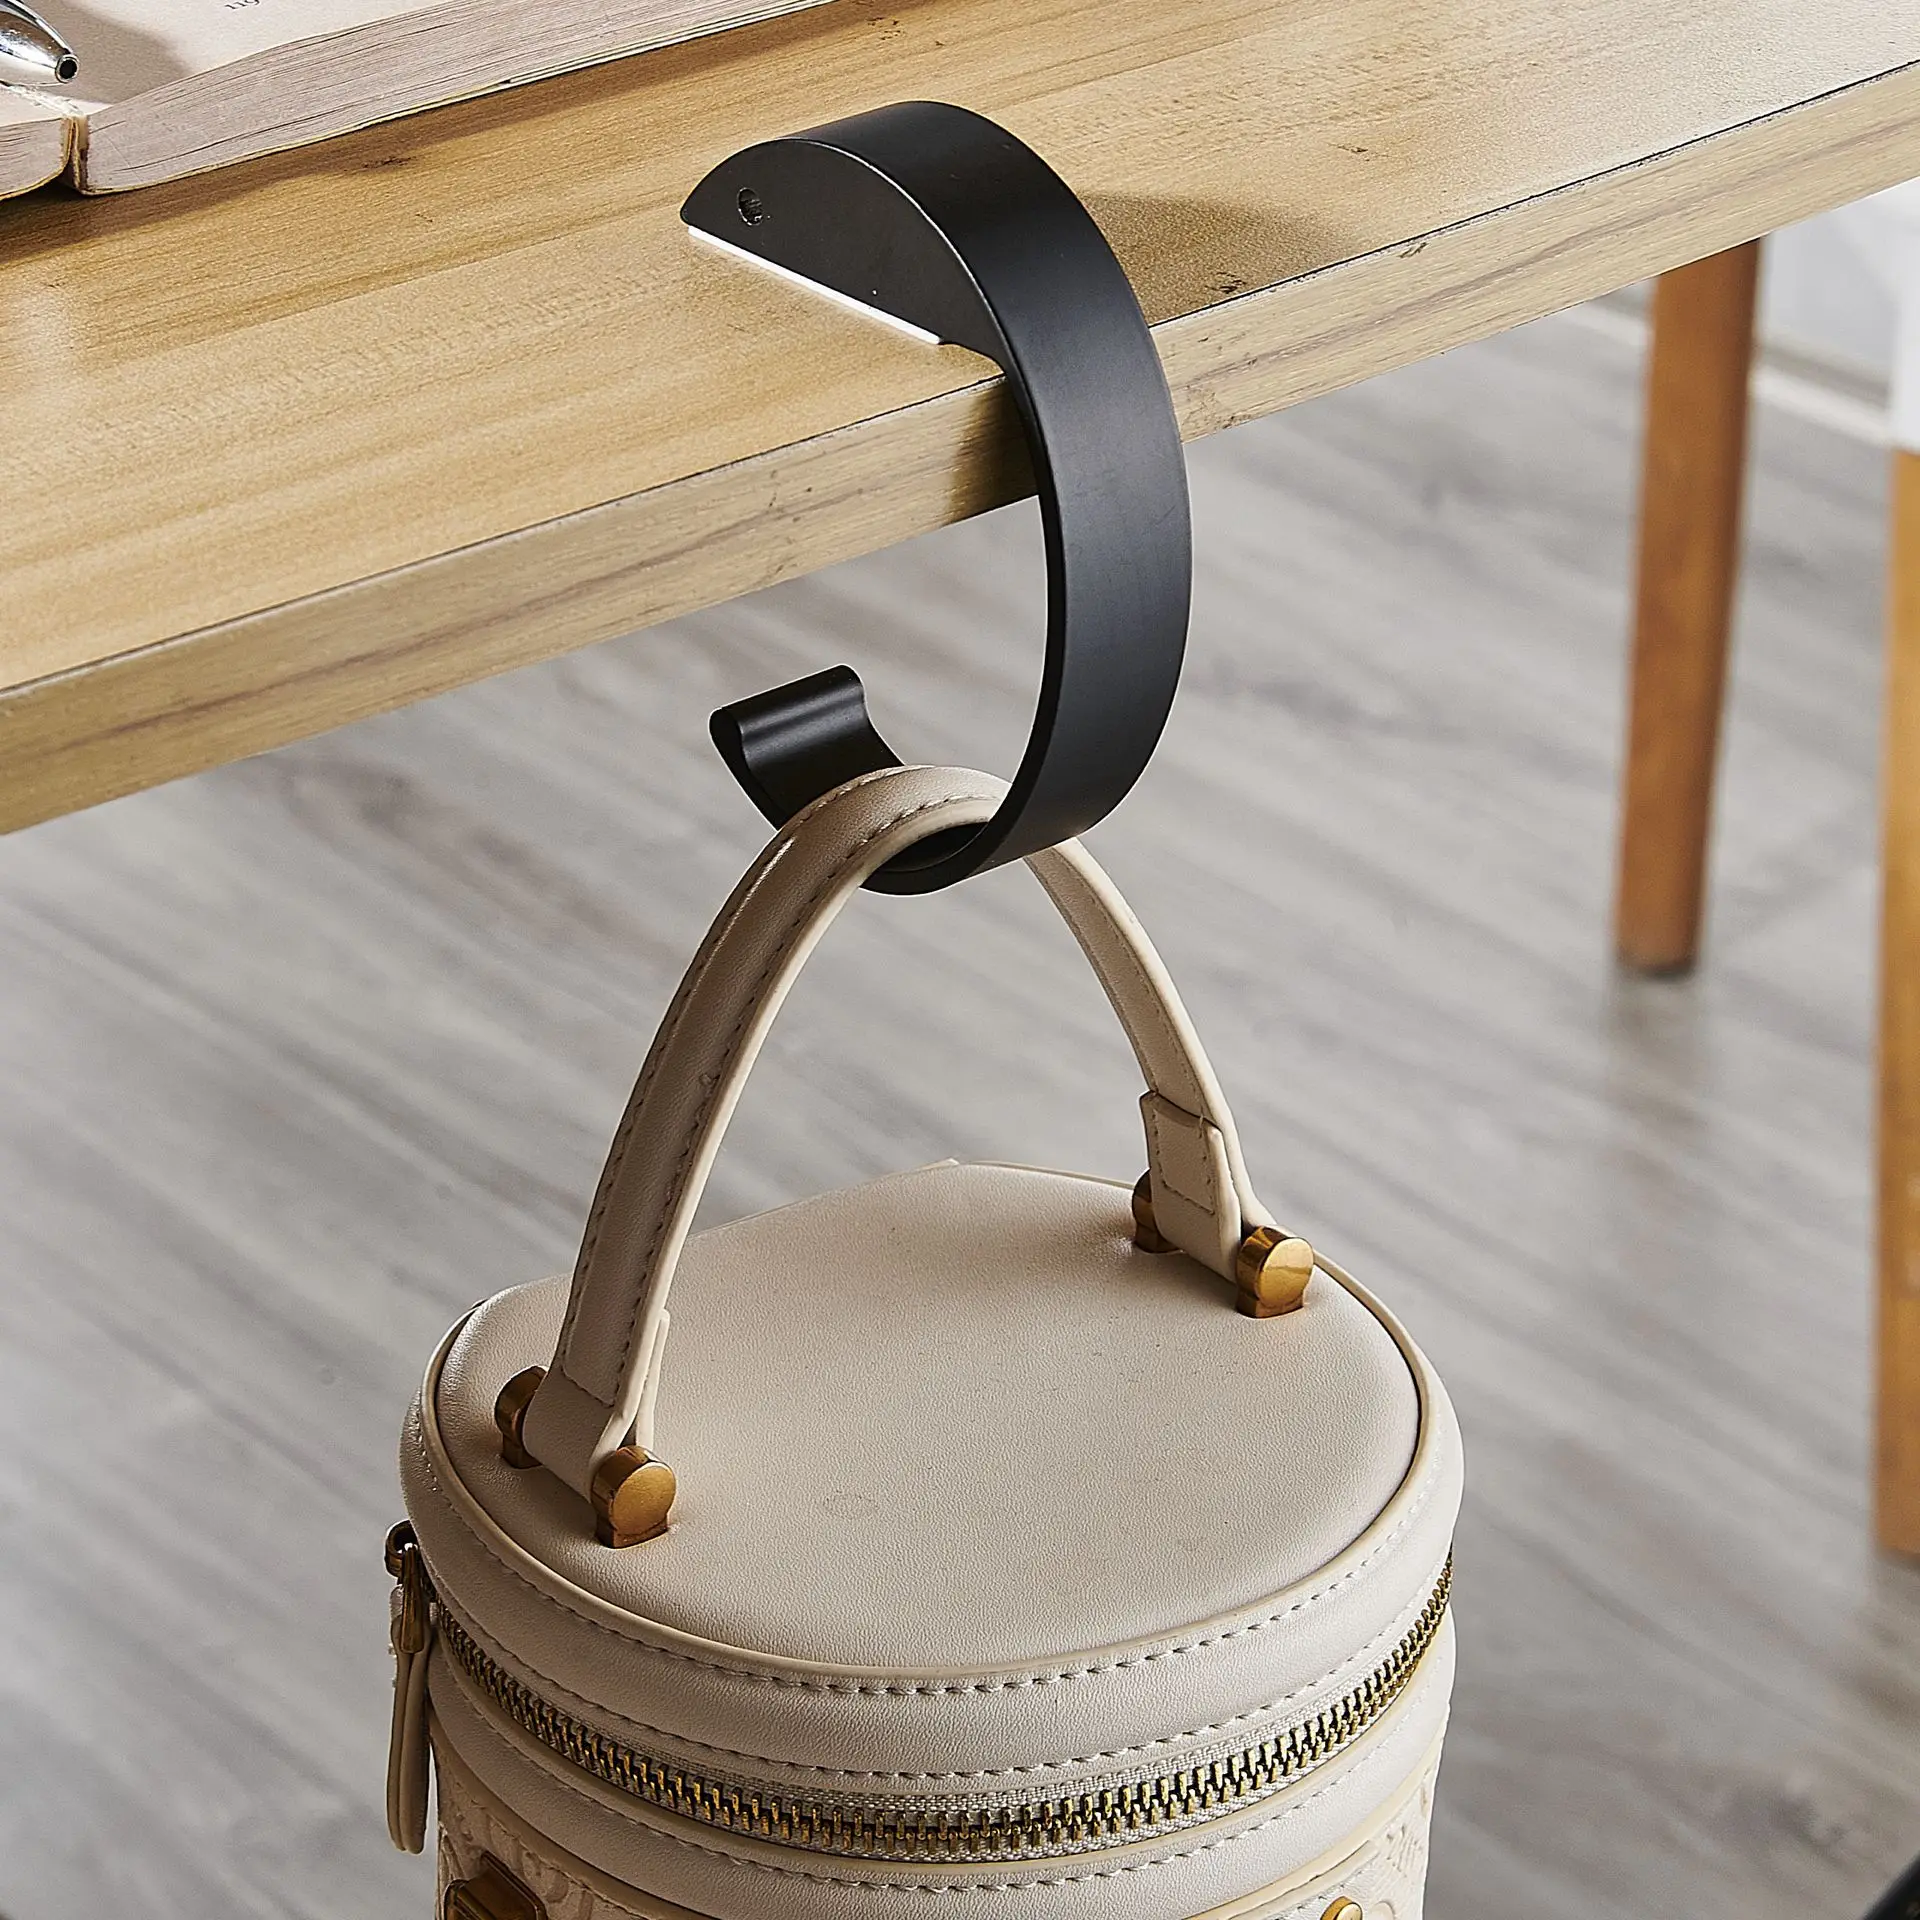 New Design Customized Table portable practical hook Student bag hook office desk mobile bag hook artifact desk side